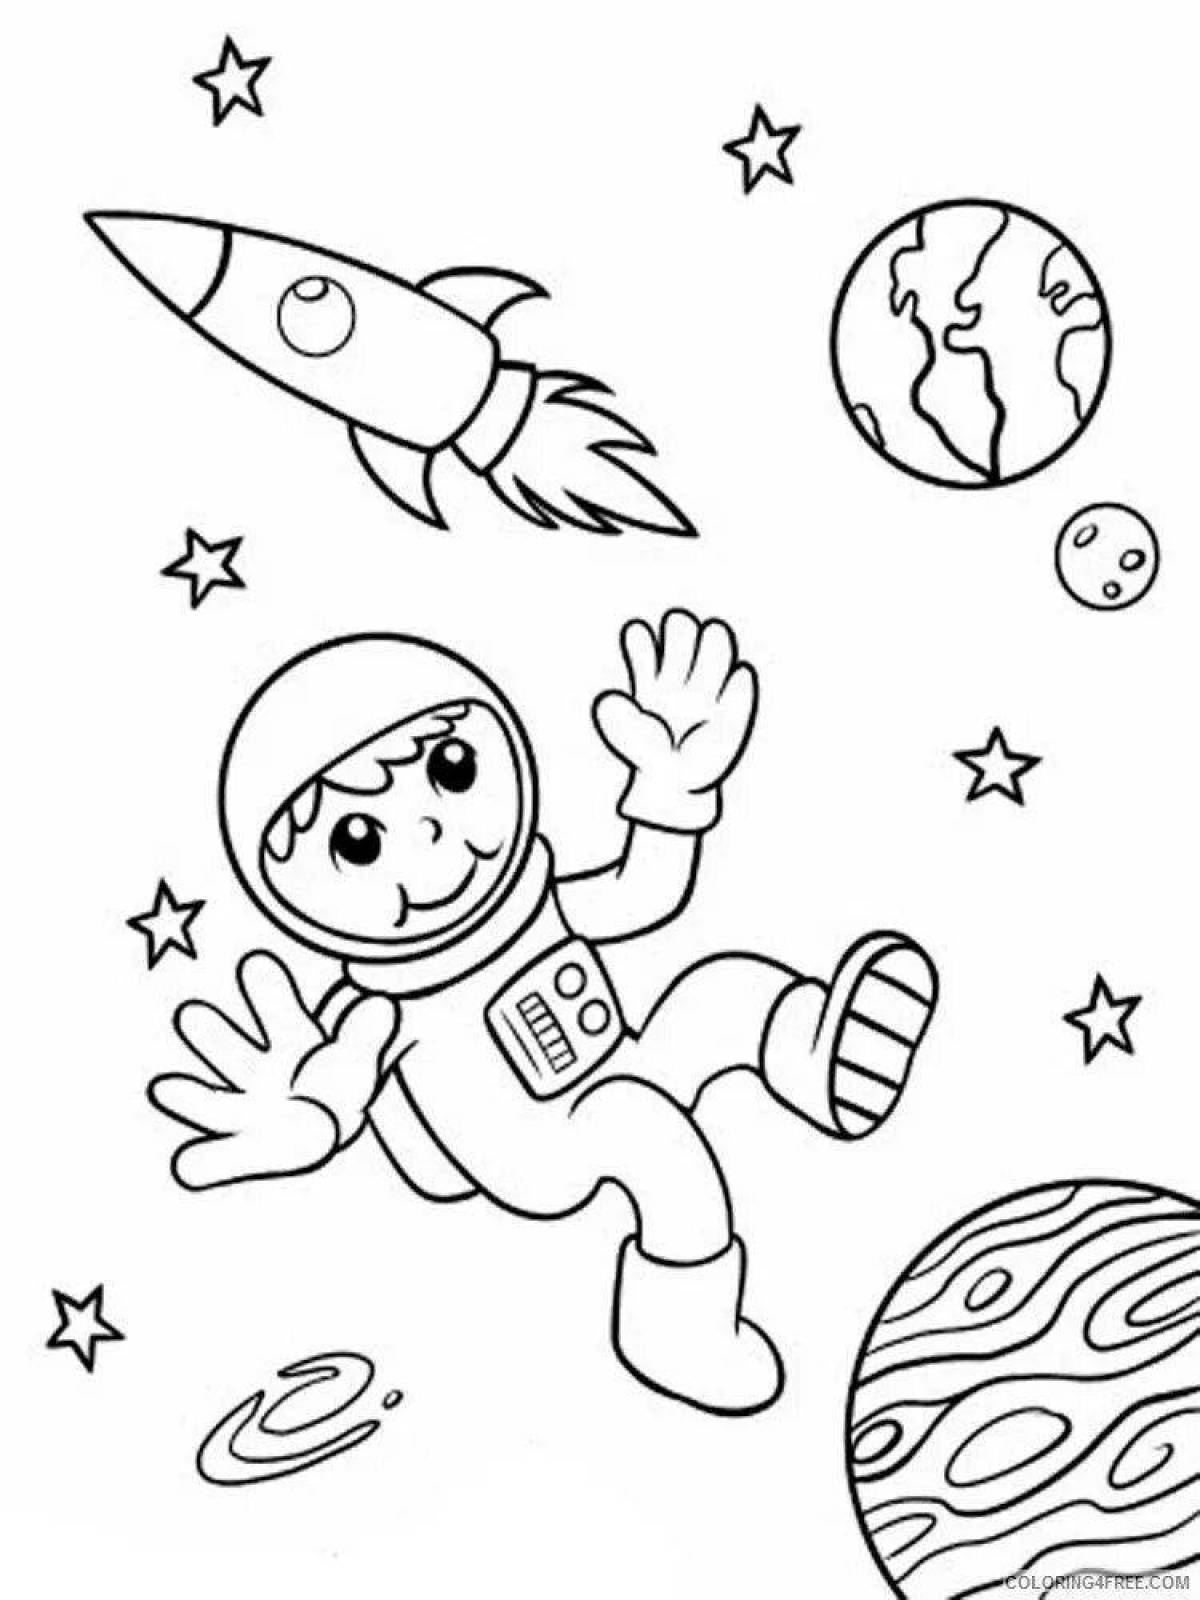 Космонавт шаблон для вырезания распечатать. Космос раскраска для детей. Космонавт раскраска для детей. Космонавт для раскрашивания для детей. Раскраска. В космосе.